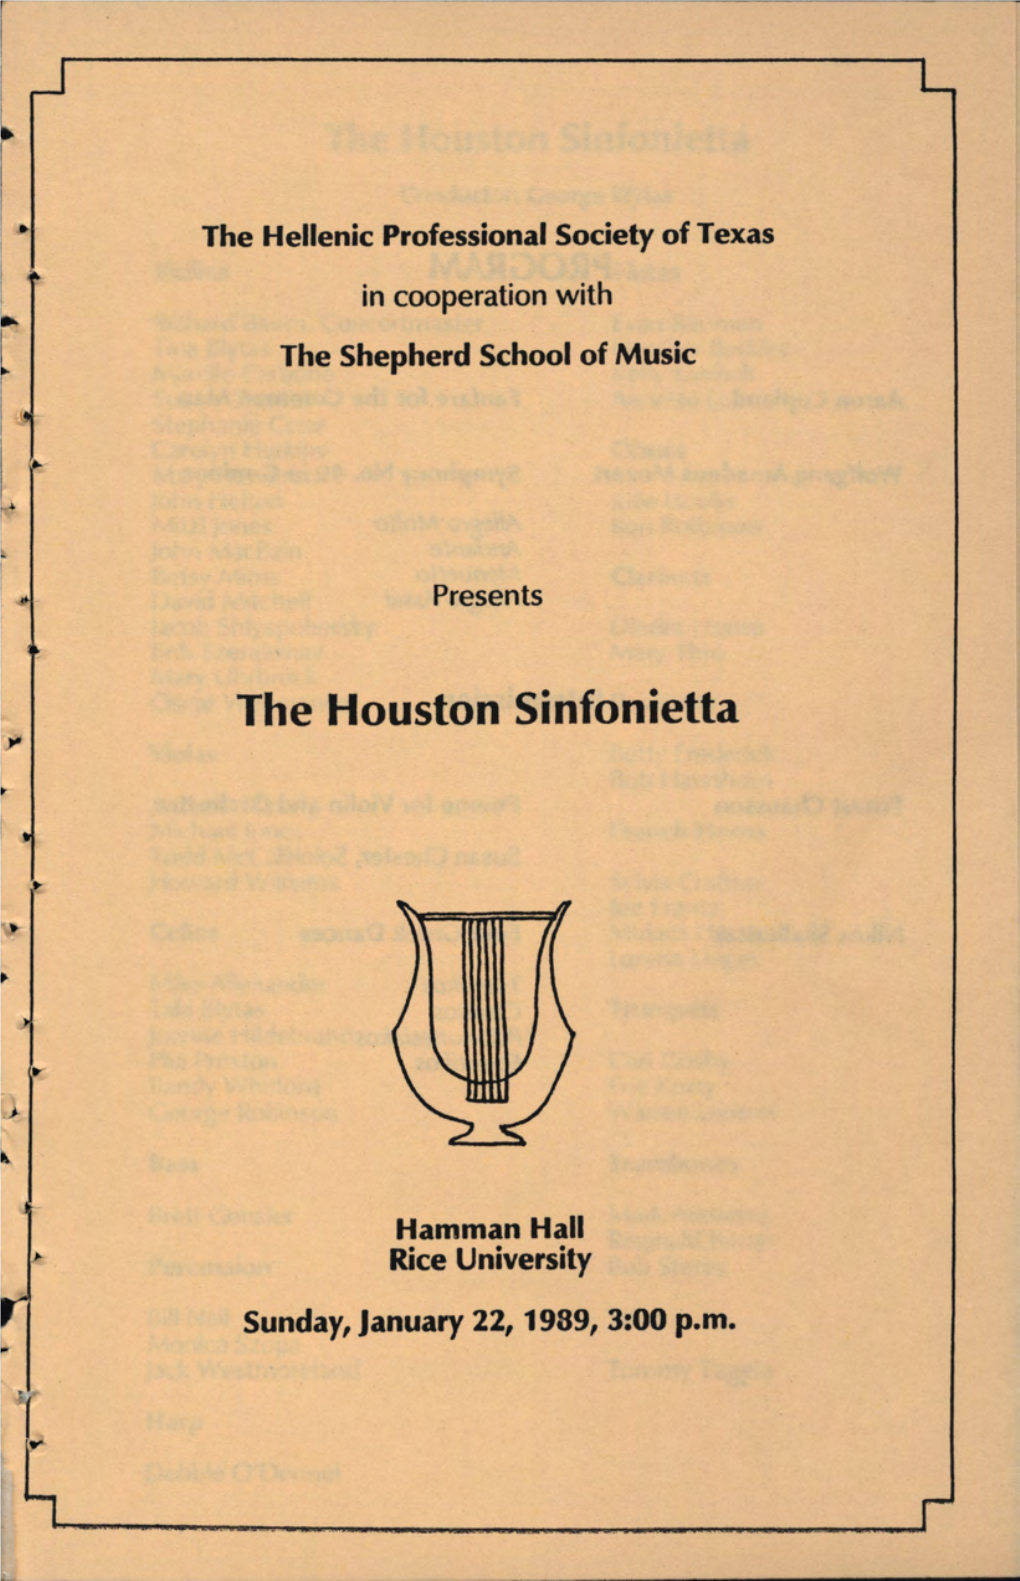 The Houston Sinfonietta